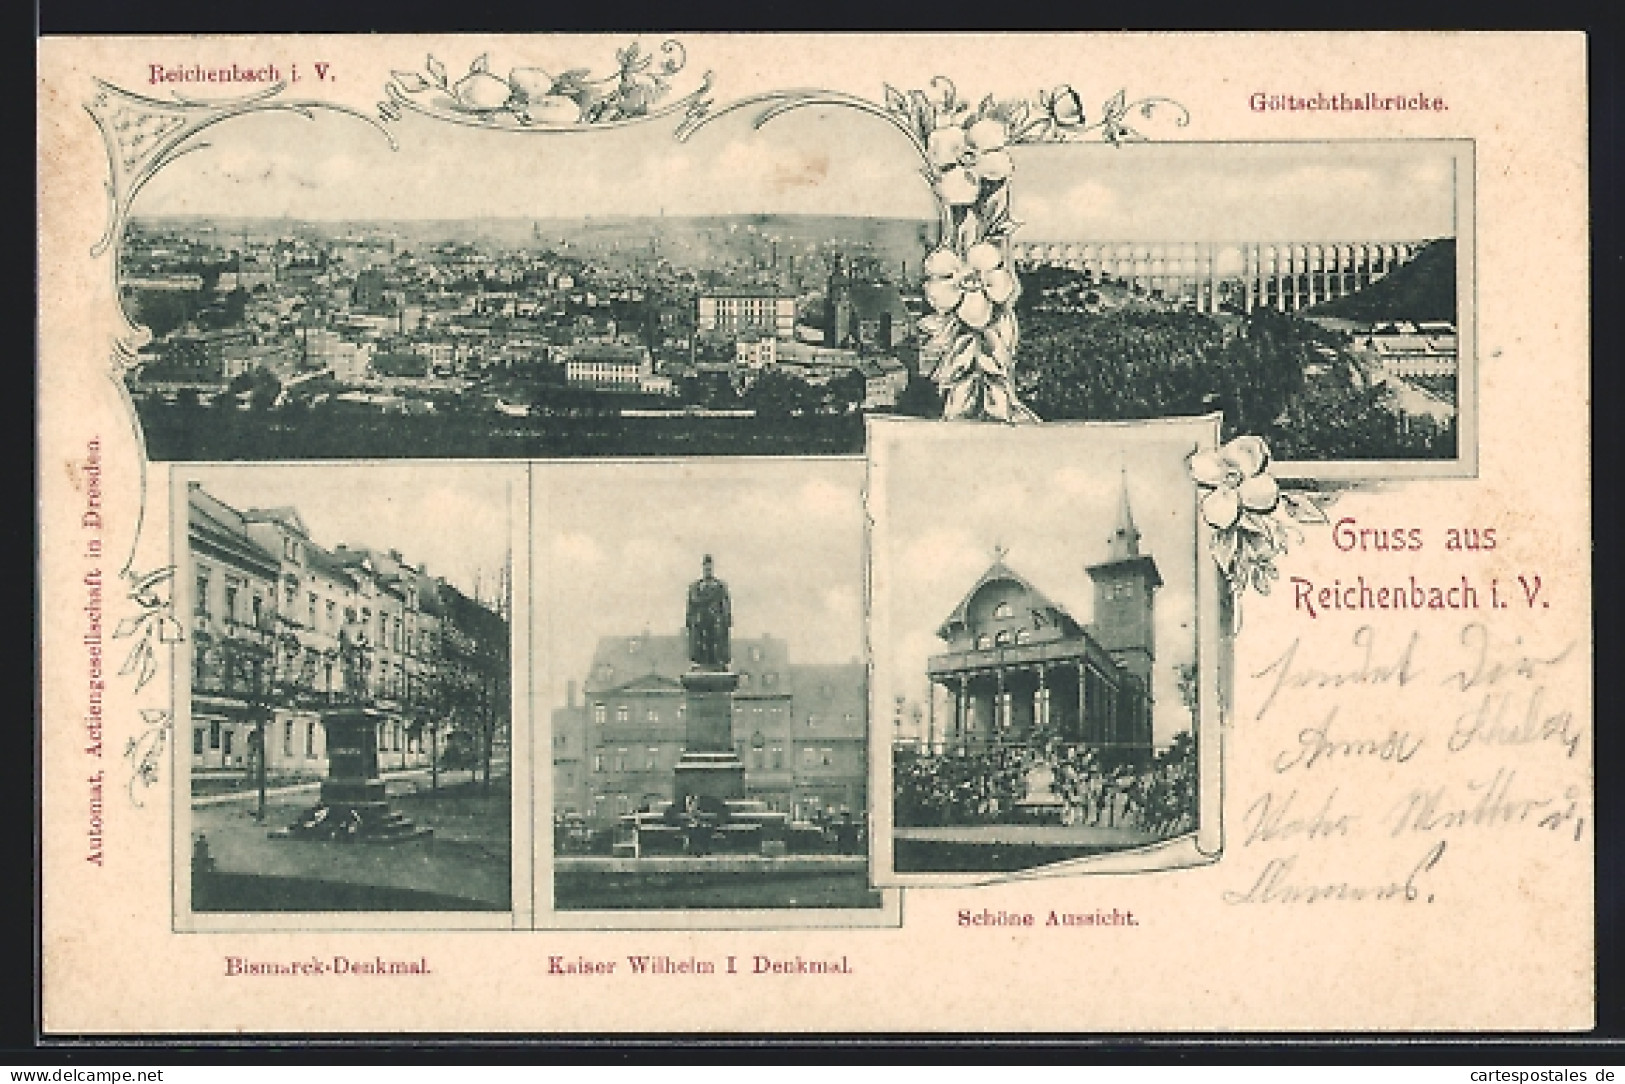 AK Reichenbach I. V., Schöne Aussicht, Bismarck-Denkmal, Kaiser Wilhelm I. Denkmal  - Reichenbach I. Vogtl.